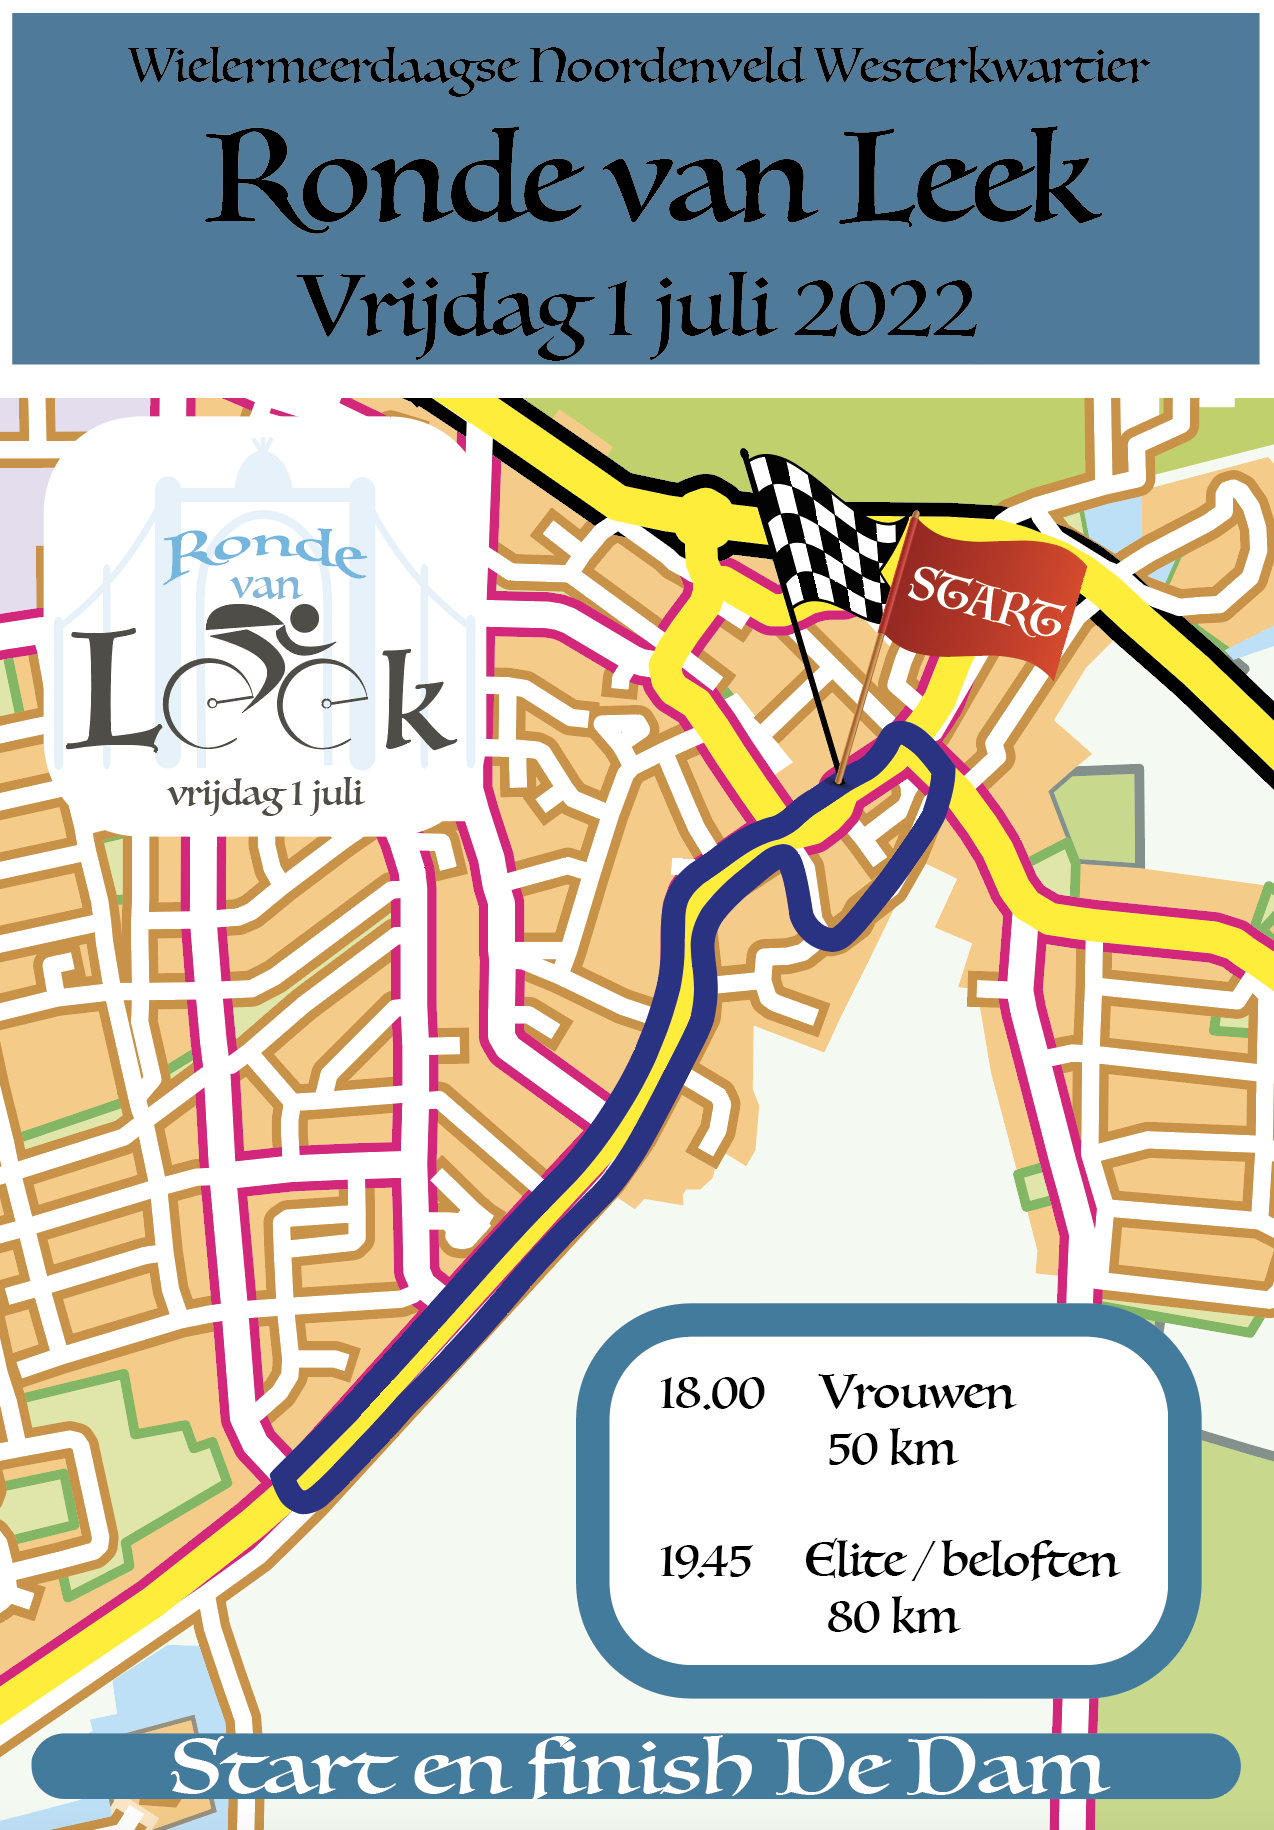 Routekaart Ronde van Leek 2022.png